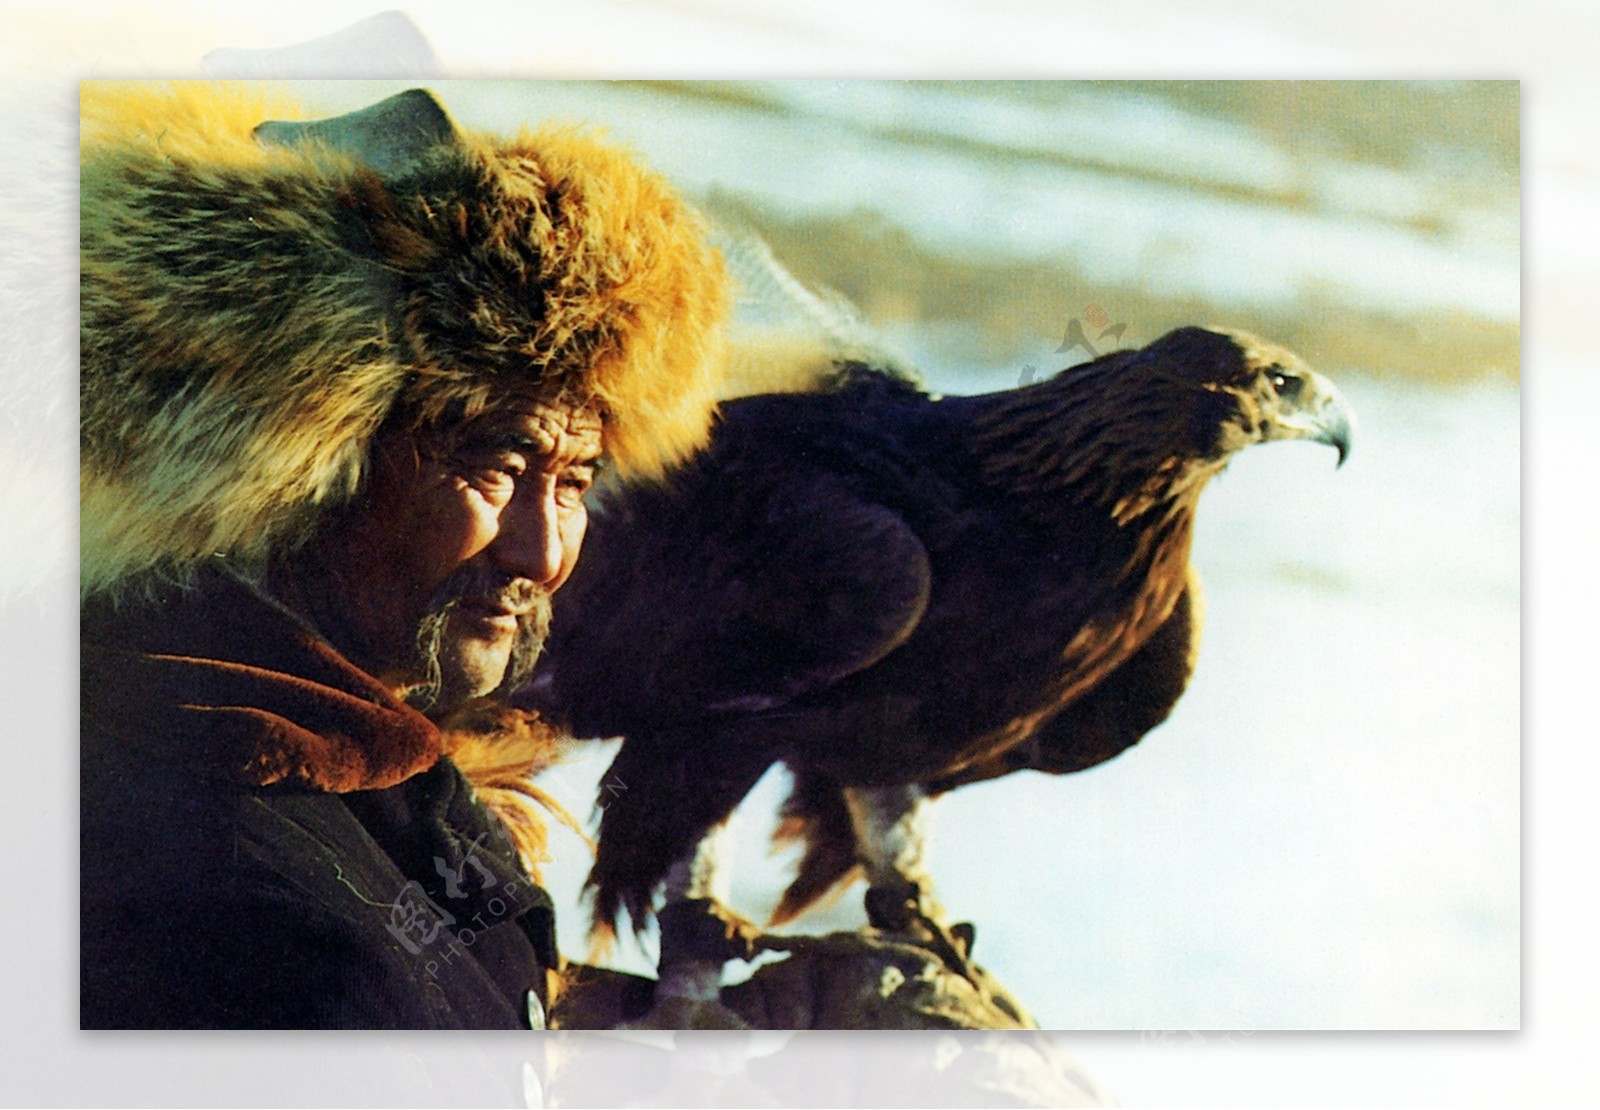 新疆哈萨克族猎人图片